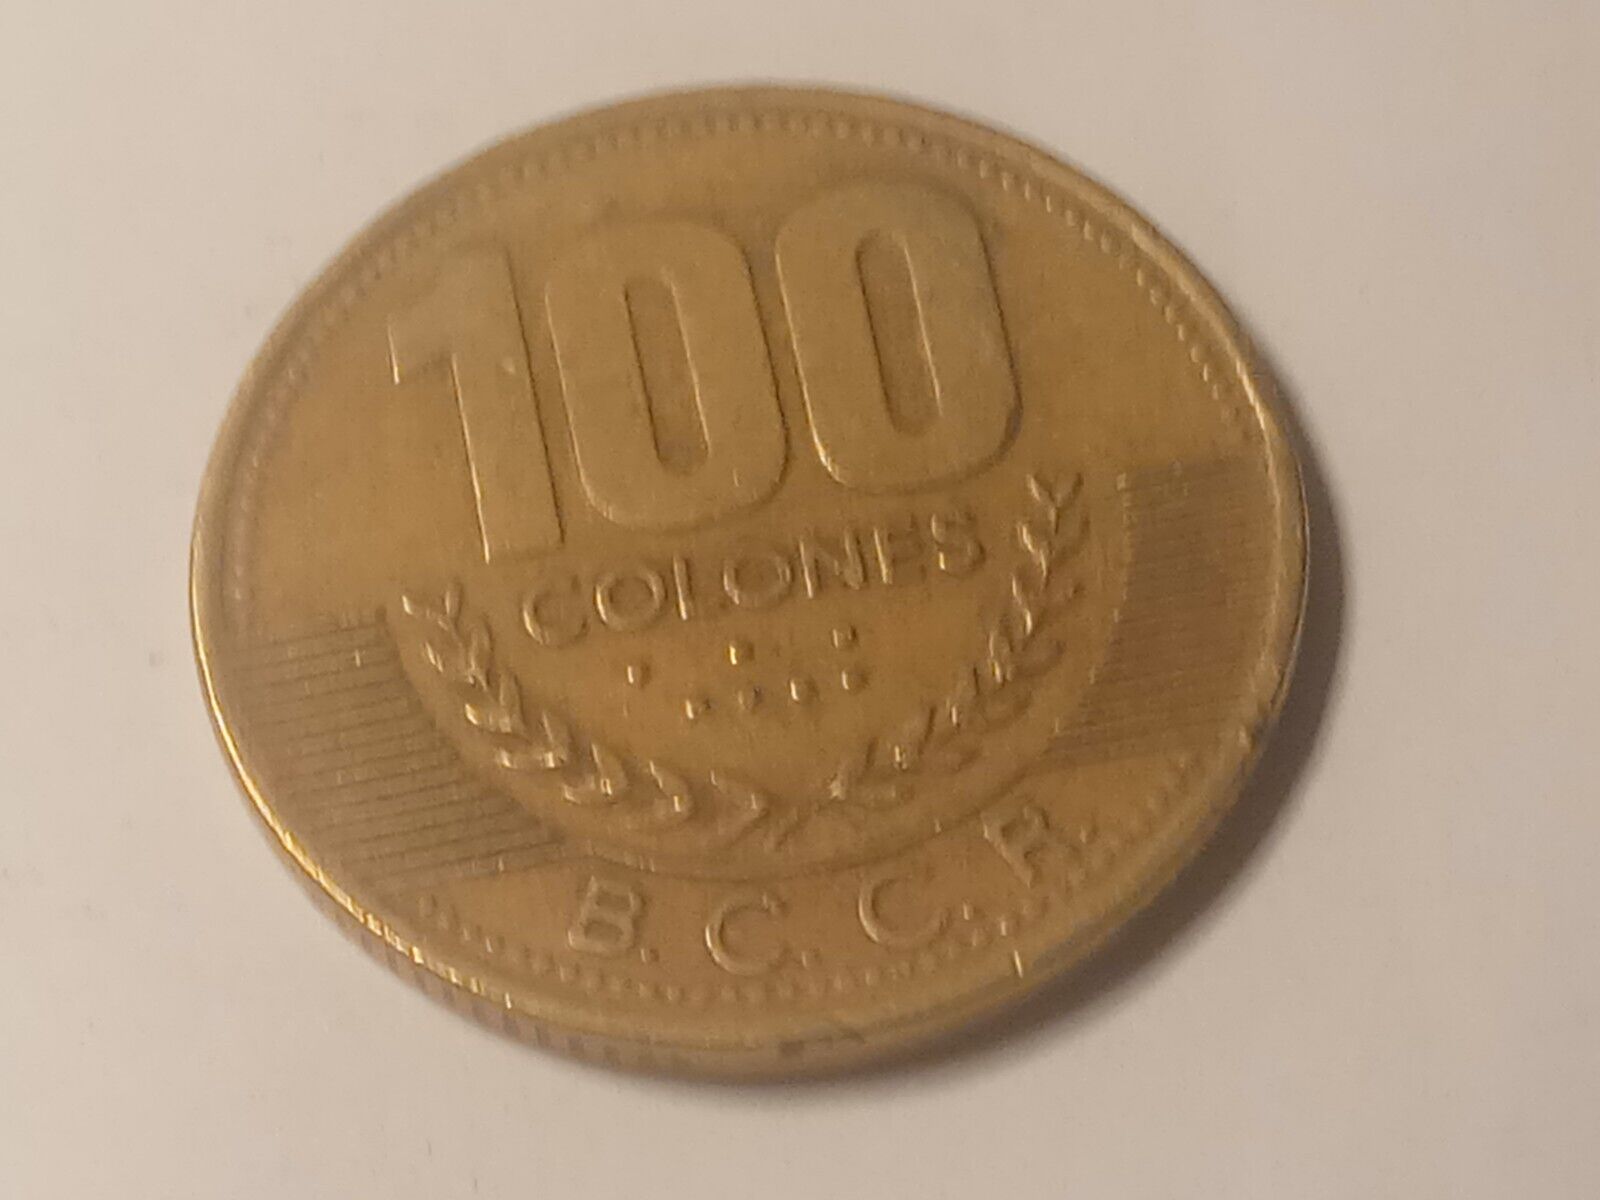 1998 100 Colognes Costa Rica Bronze Coin Beautiful